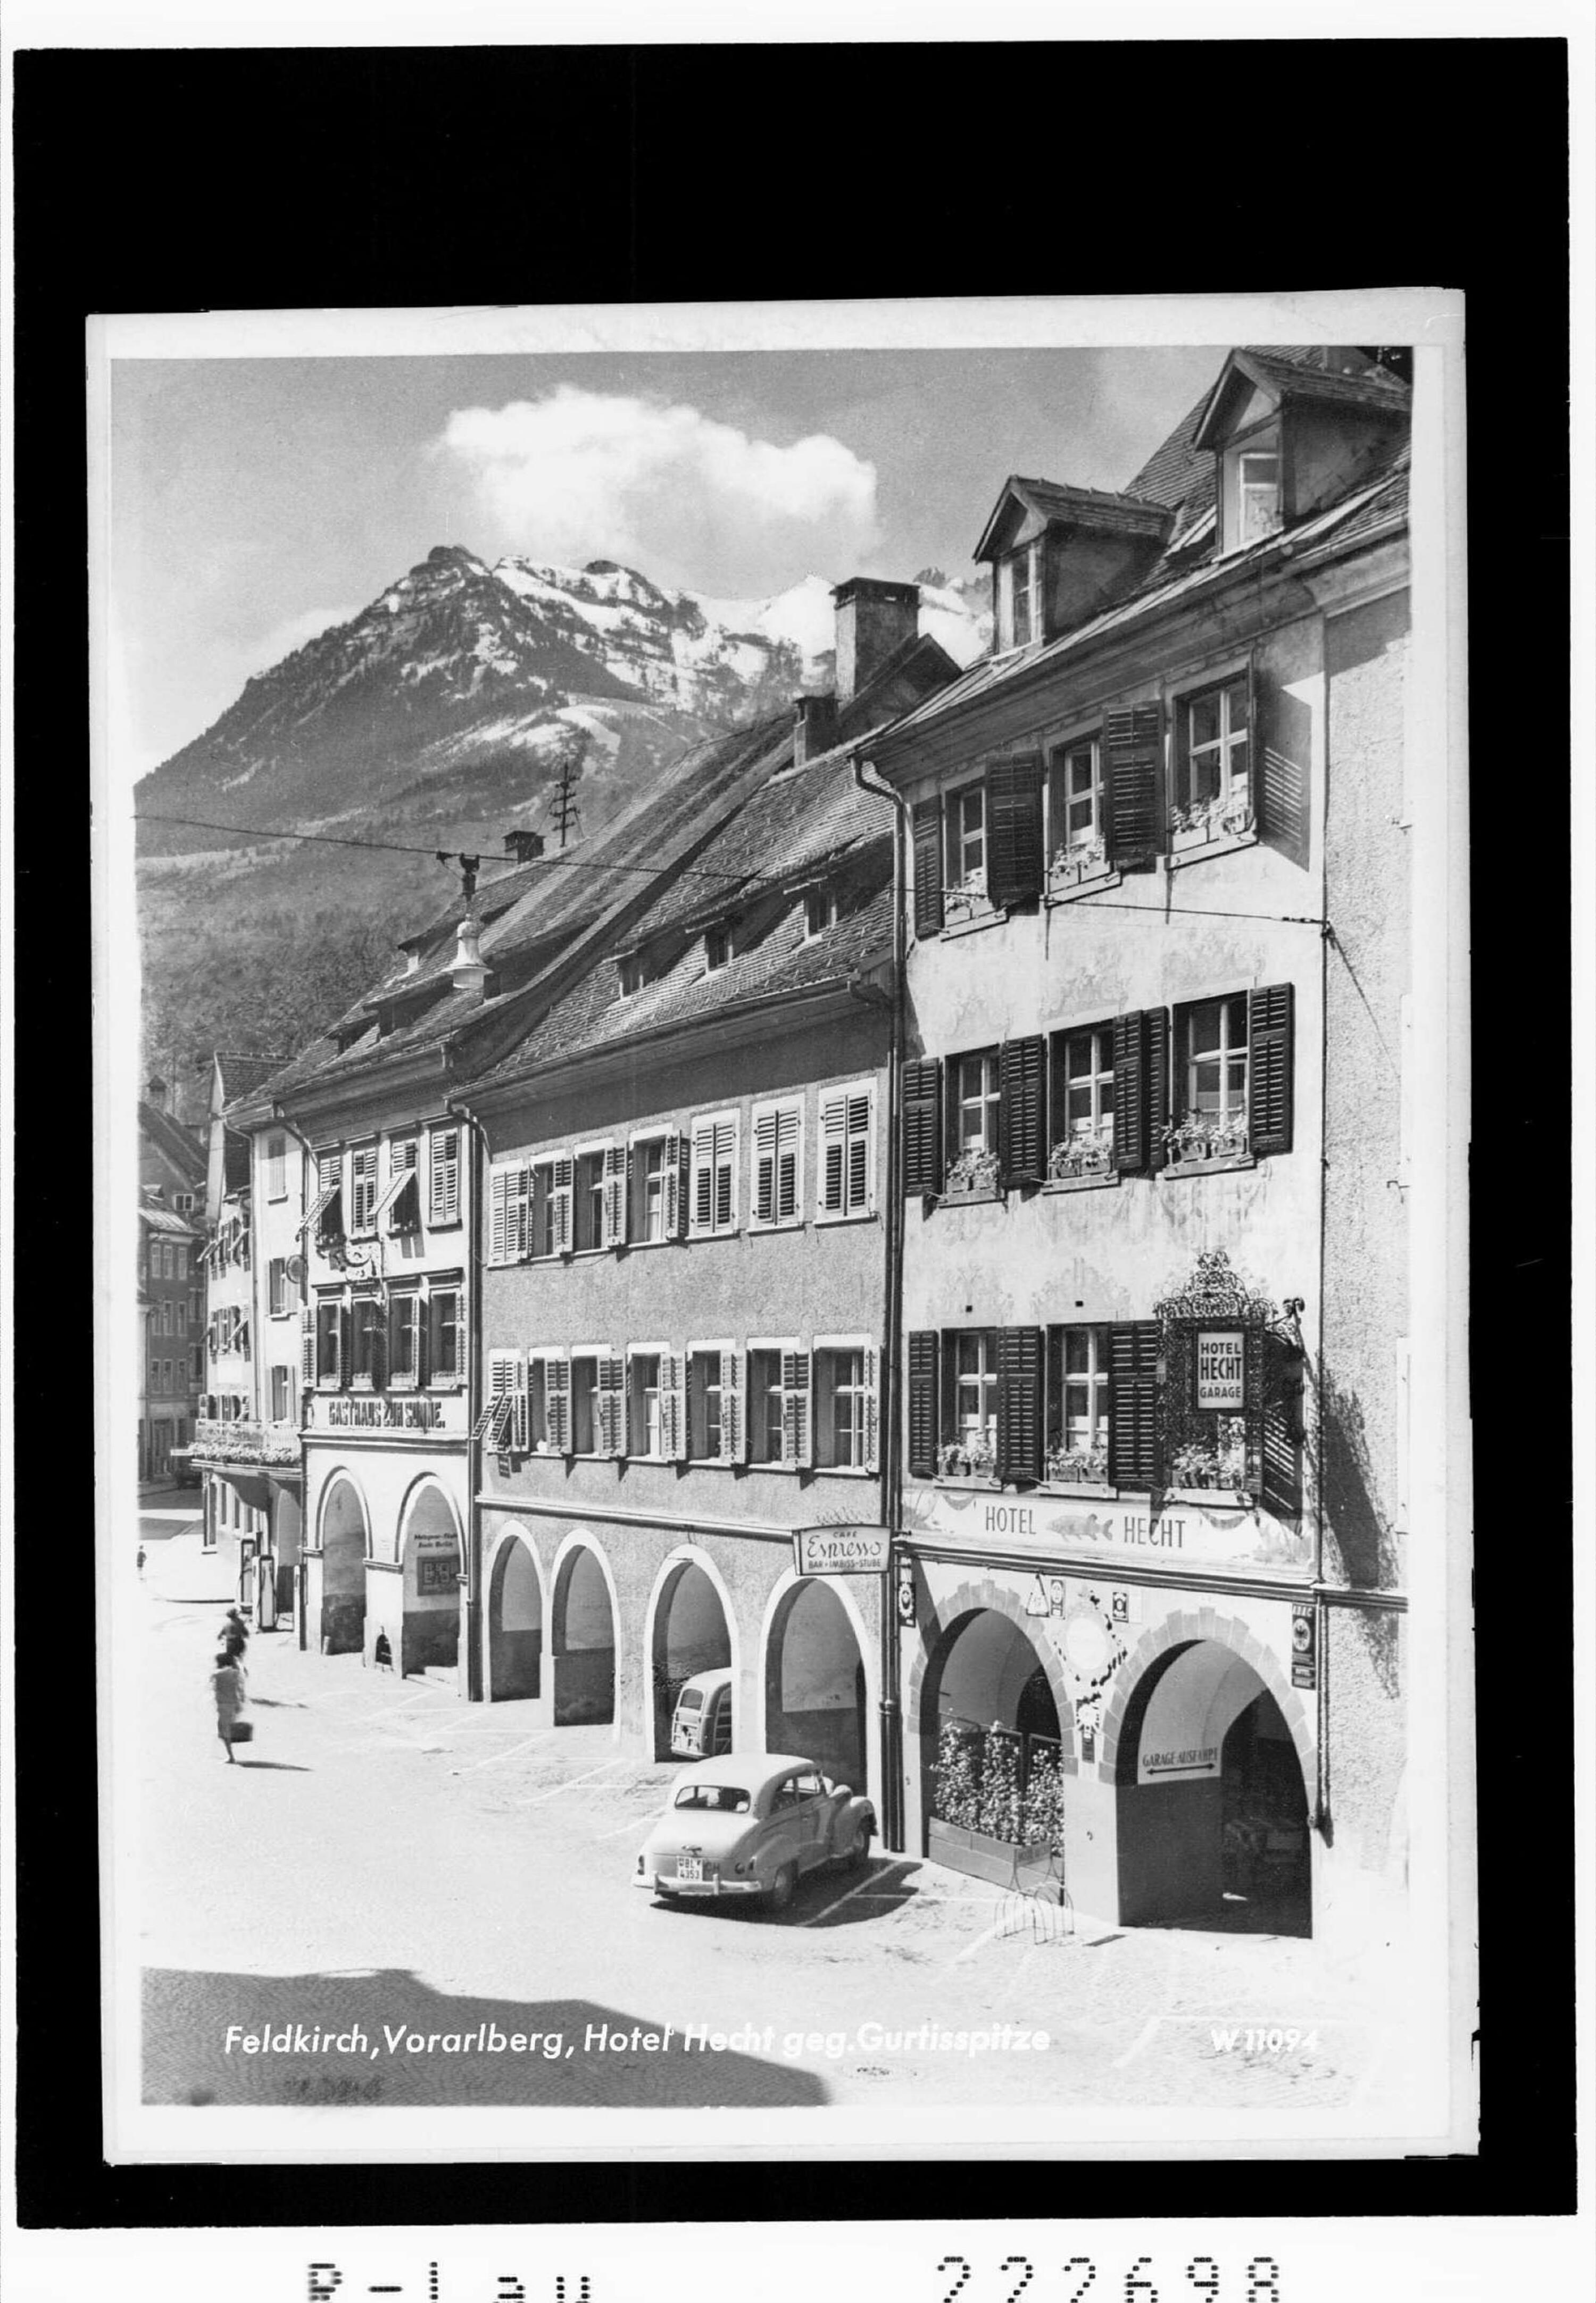 Feldkirch / Vorarlberg / Hotel Hecht gegen Gurtisspitze></div>


    <hr>
    <div class=